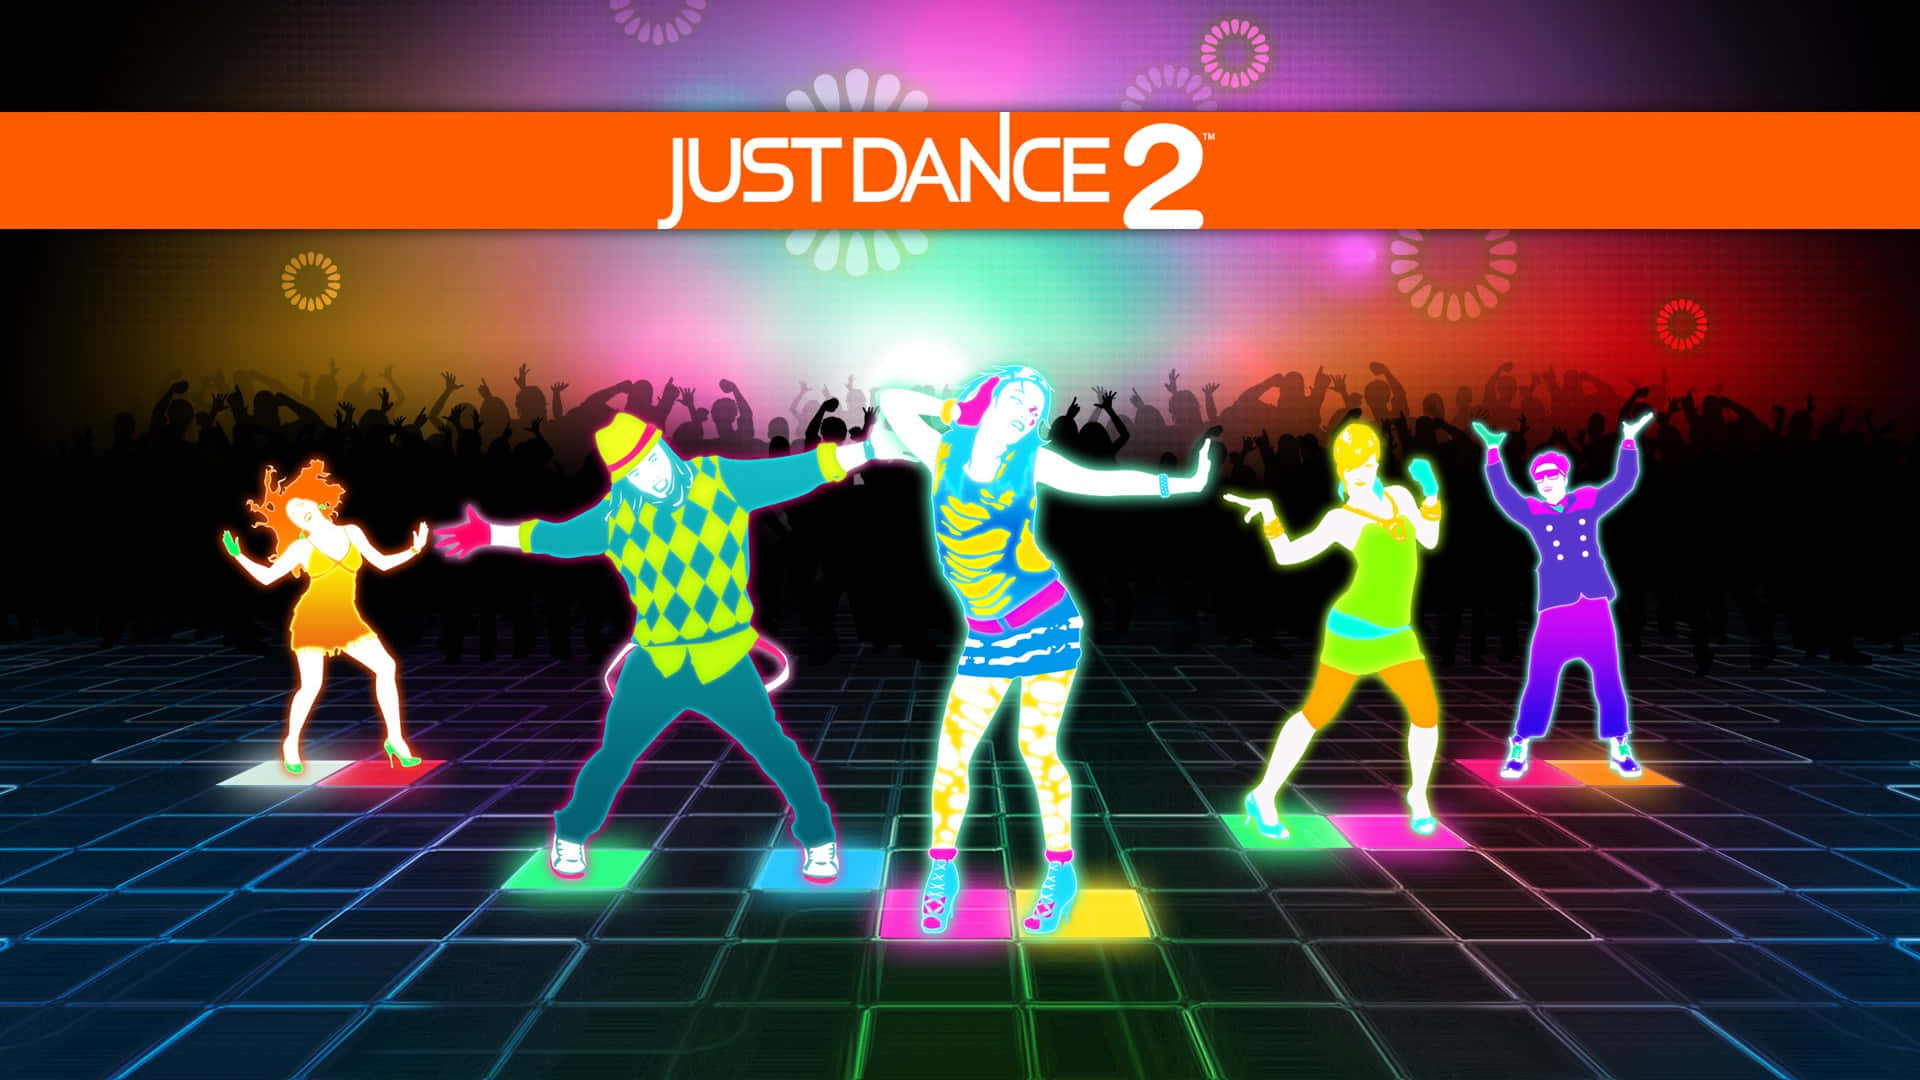 Justdance 1920 X 1080 Hintergrund